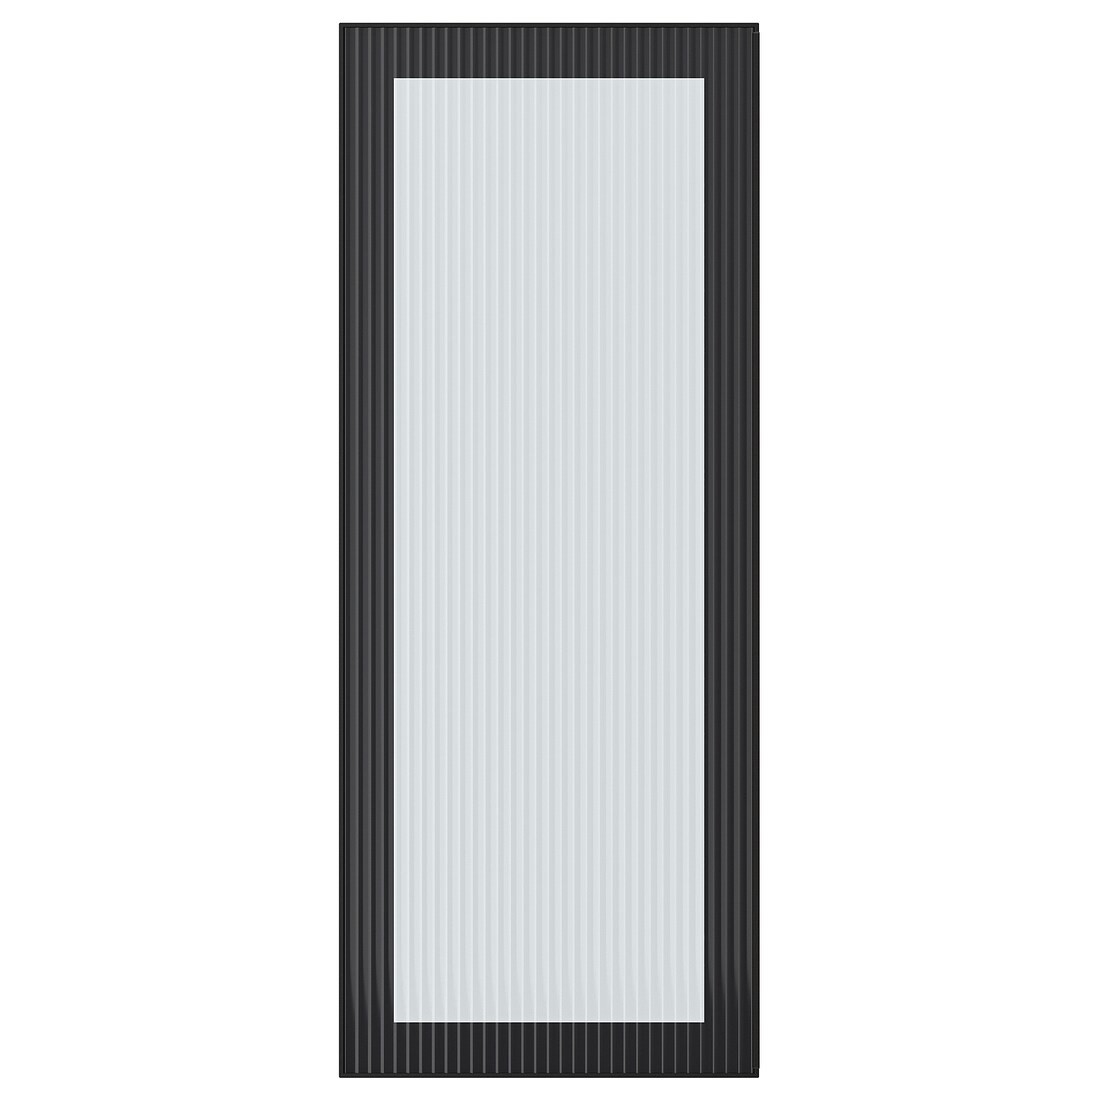 IKEA HEJSTA ХЭЙСТА Стеклянная дверь, антрацит / рифленое стекло, 40x100 см 60526636 605.266.36